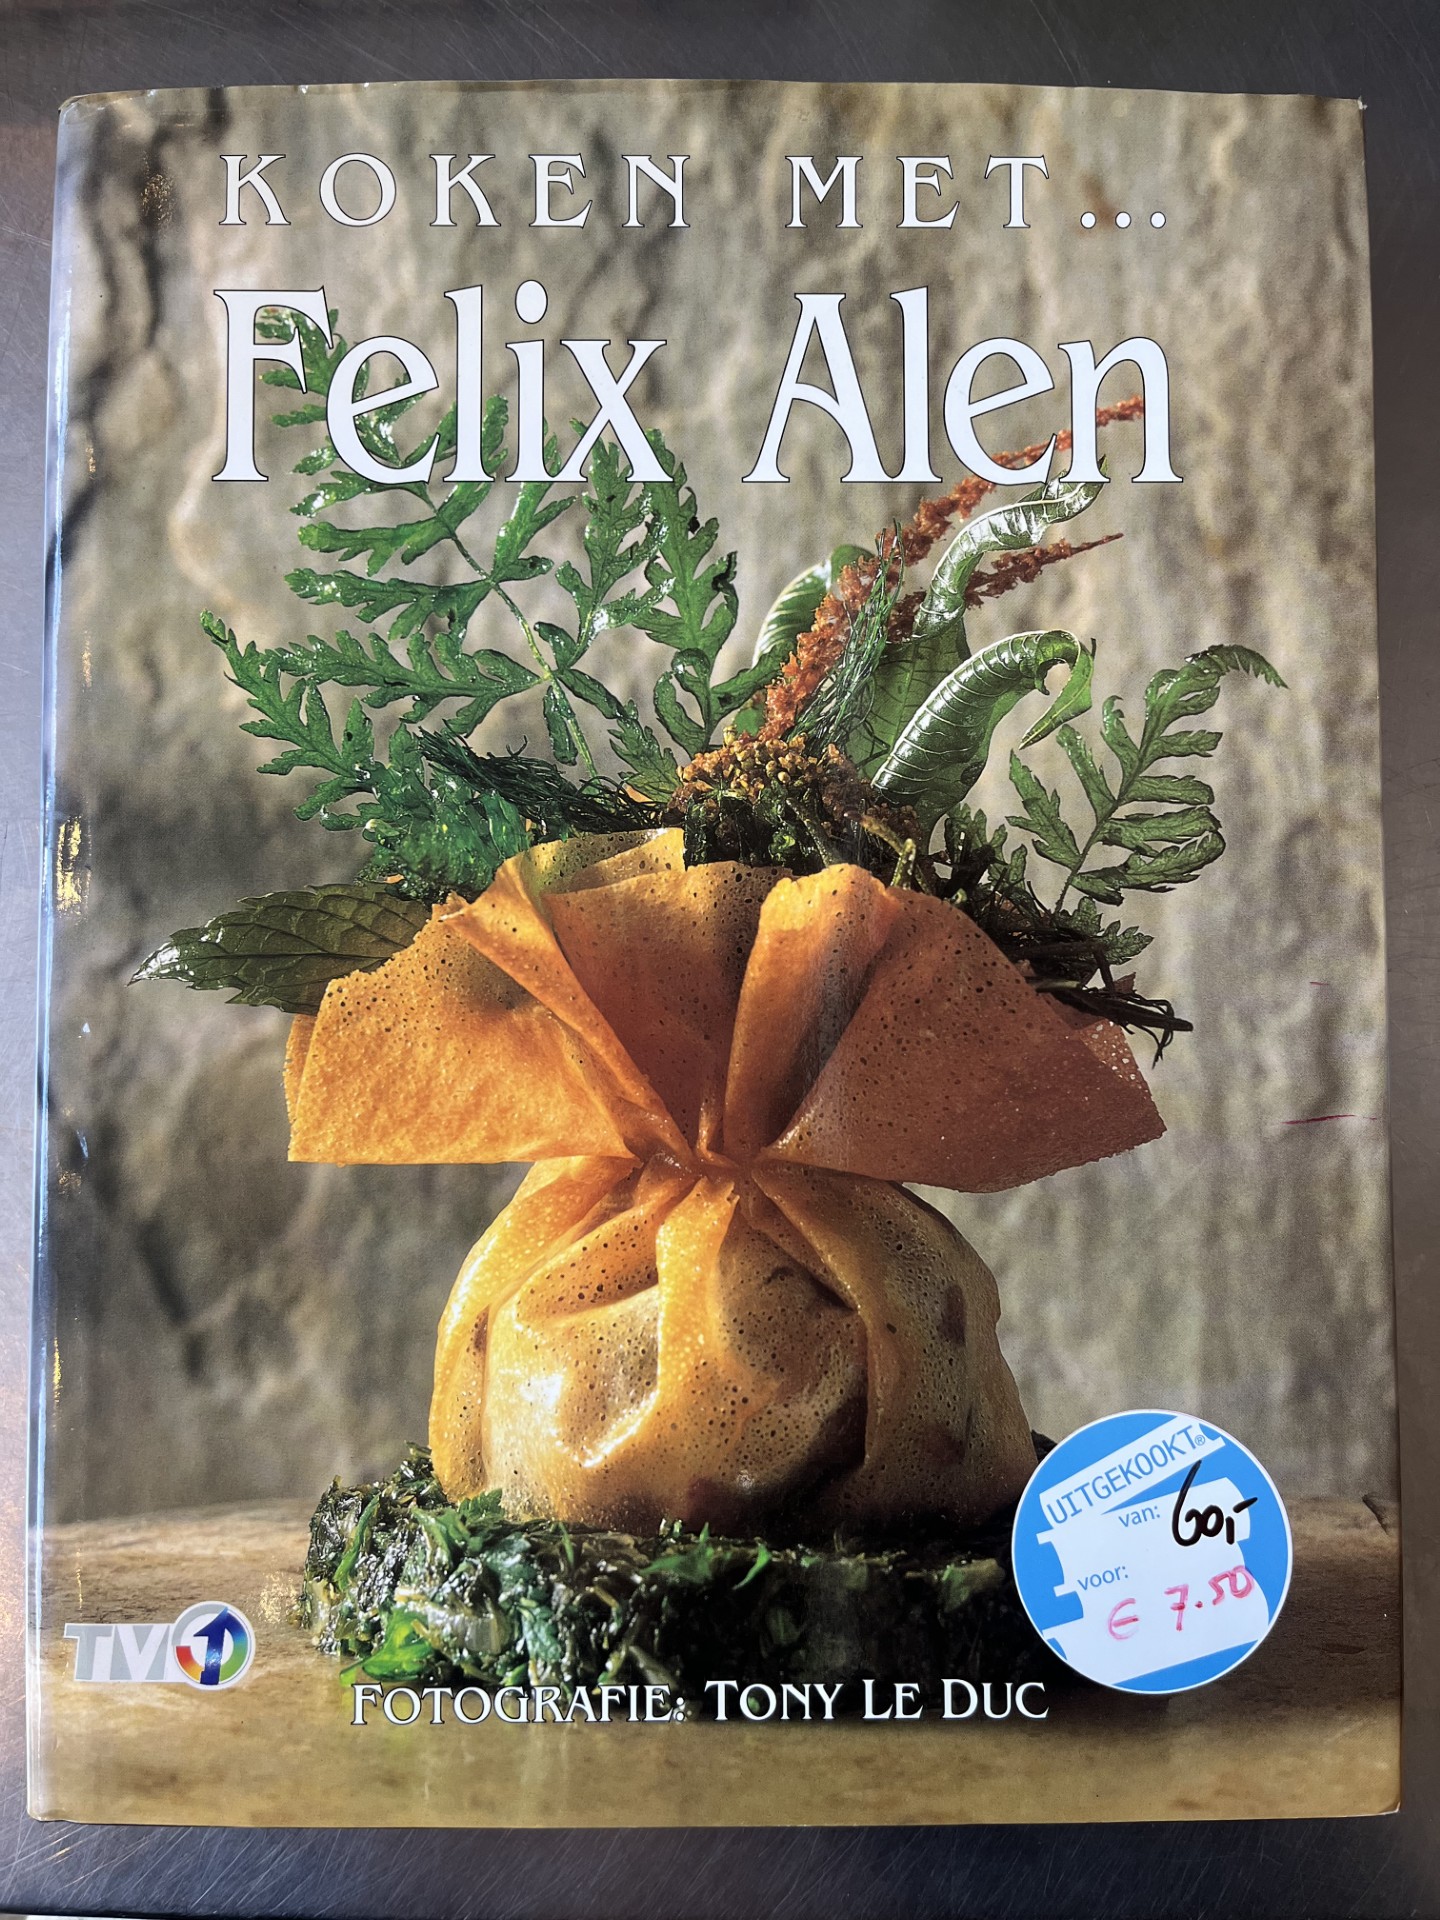 Koken met Felix Alen